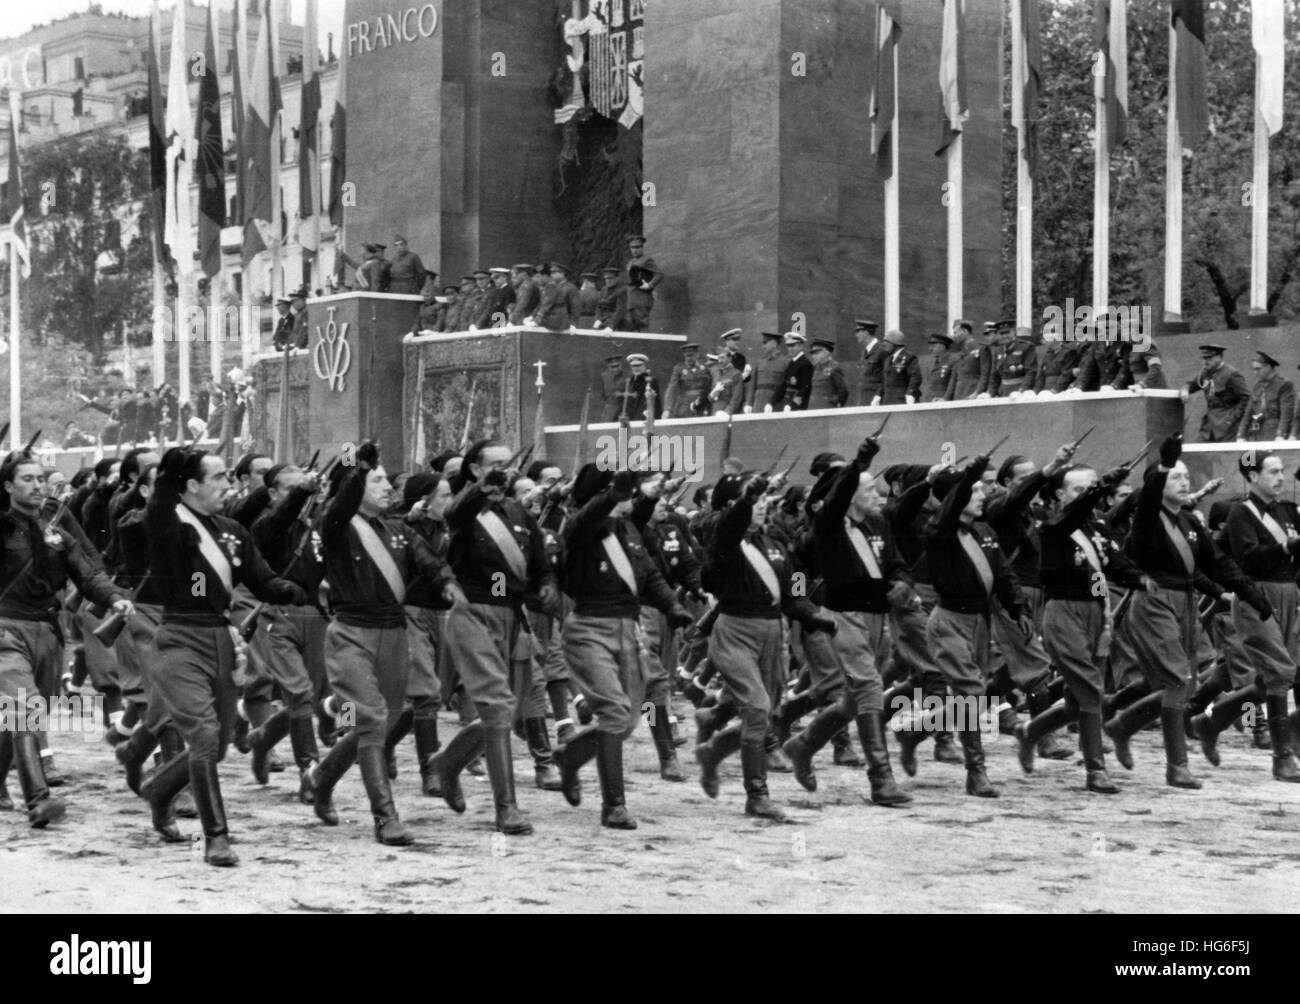 Le tableau de la propagande nazie montre la marche de la milice fasciste d'Italie (communément appelée « Blackshirts ») à l'occasion du grand défilé de victoire après la prise du pouvoir par Franco à Madrid, Espagne, mai 1939. Fotoarchiv für Zeitgeschichtee- PAS DE SERVICE DE FIL - | utilisation dans le monde entier Banque D'Images